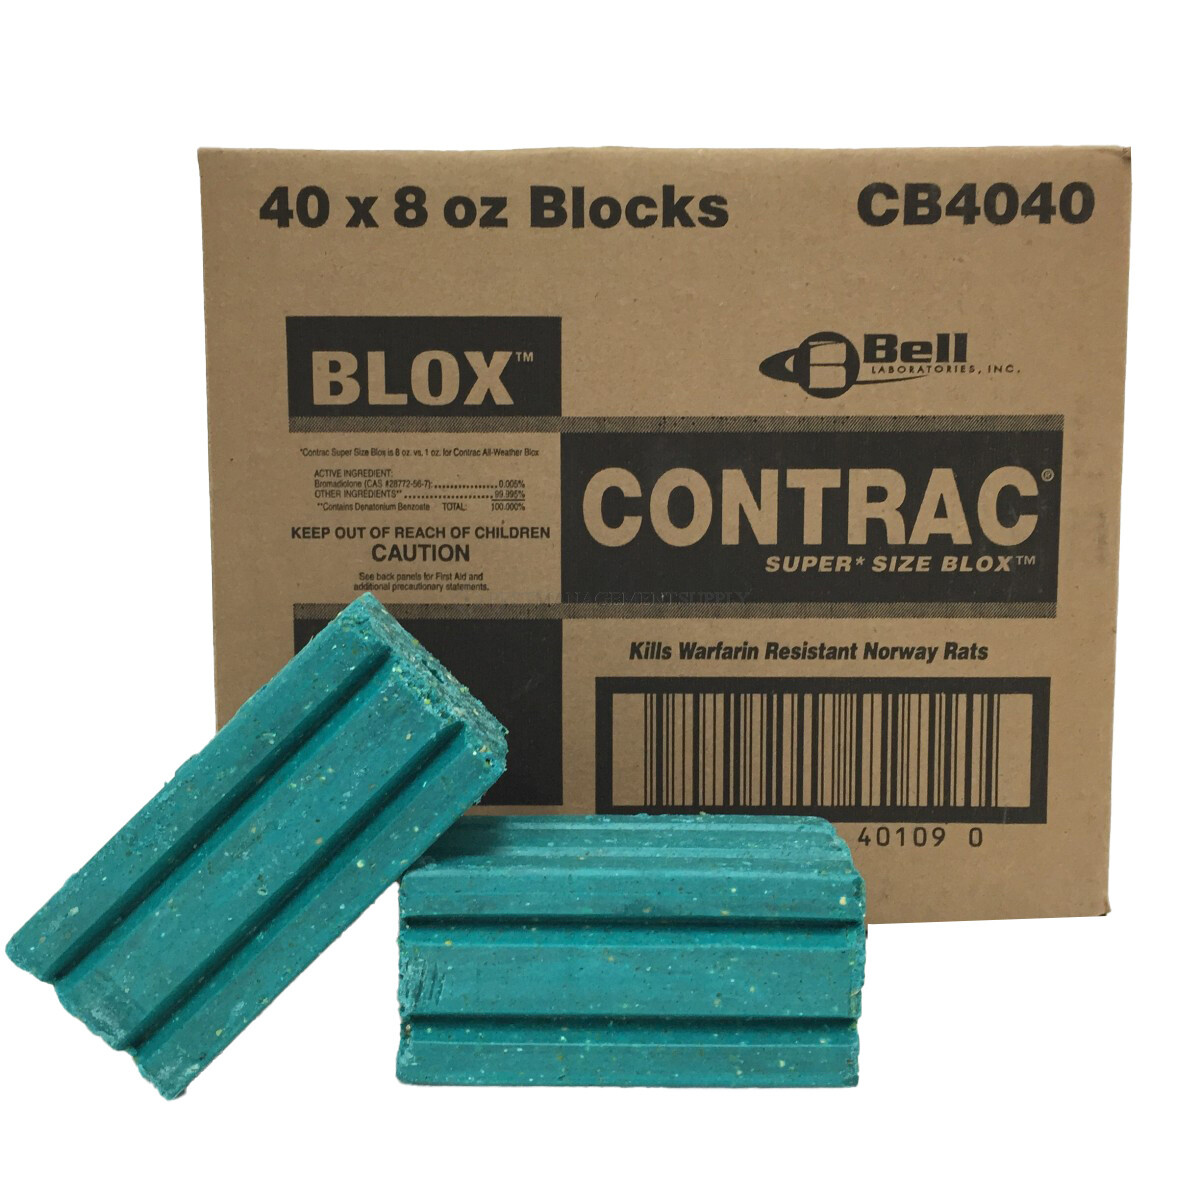 Contrac Super Size Blox (40 x 8 oz blox)